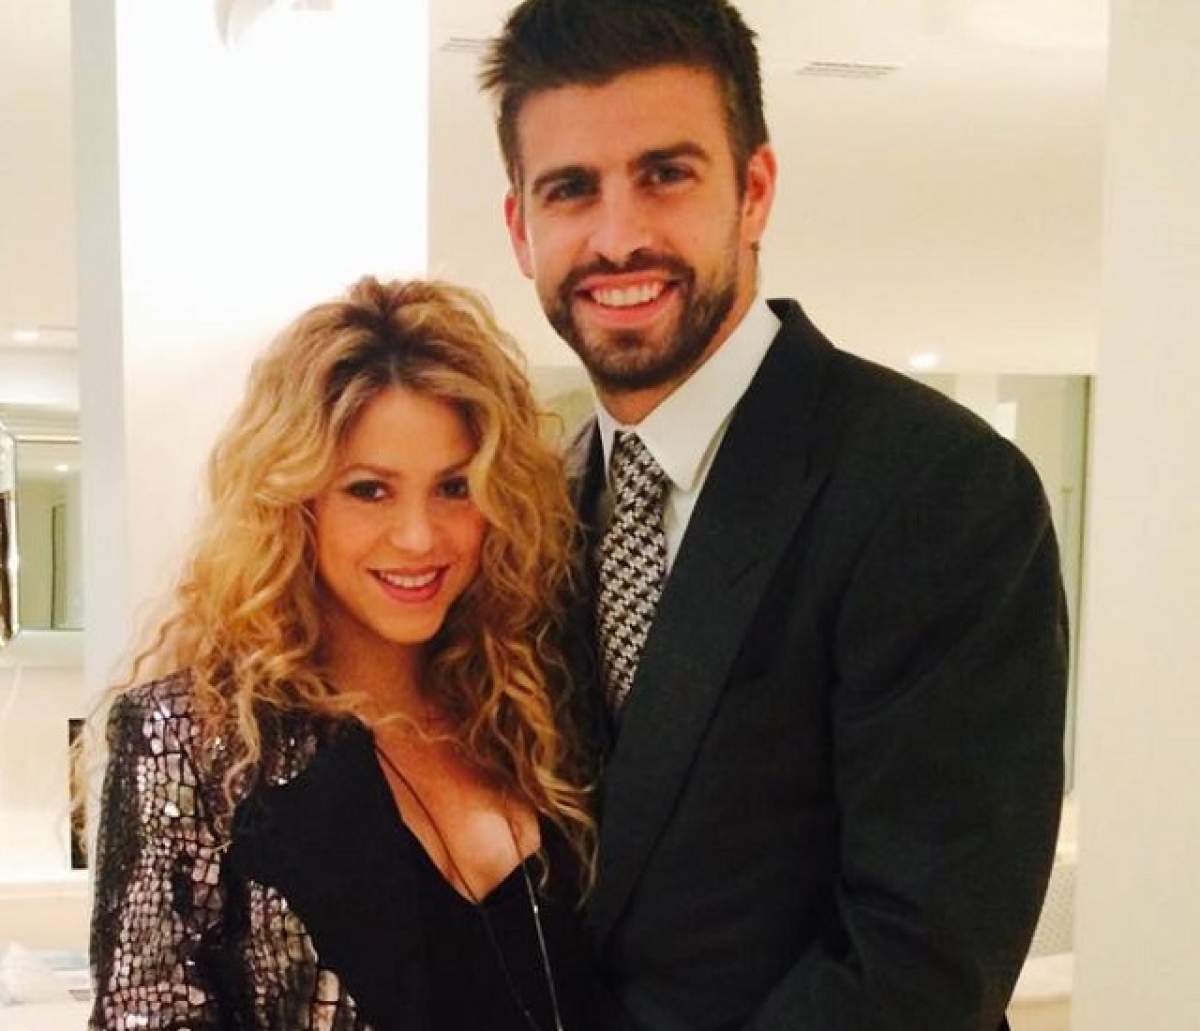 Shakira şi Gerard Piqué au decis ce nume îi vor pune copilaşului nou-născut! Ce semnificaţie are